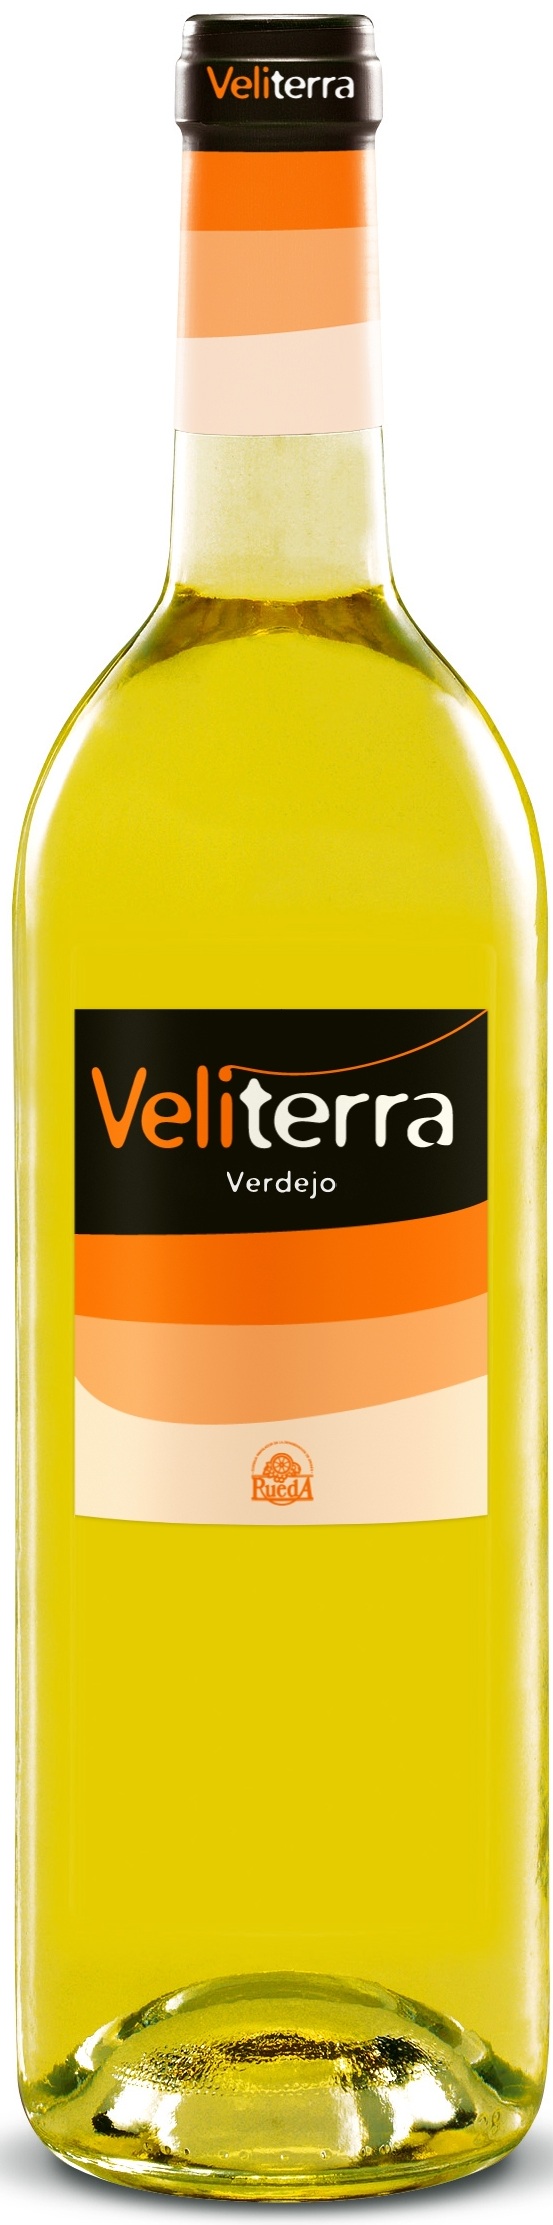 Imagen de la botella de Vino Veliterra